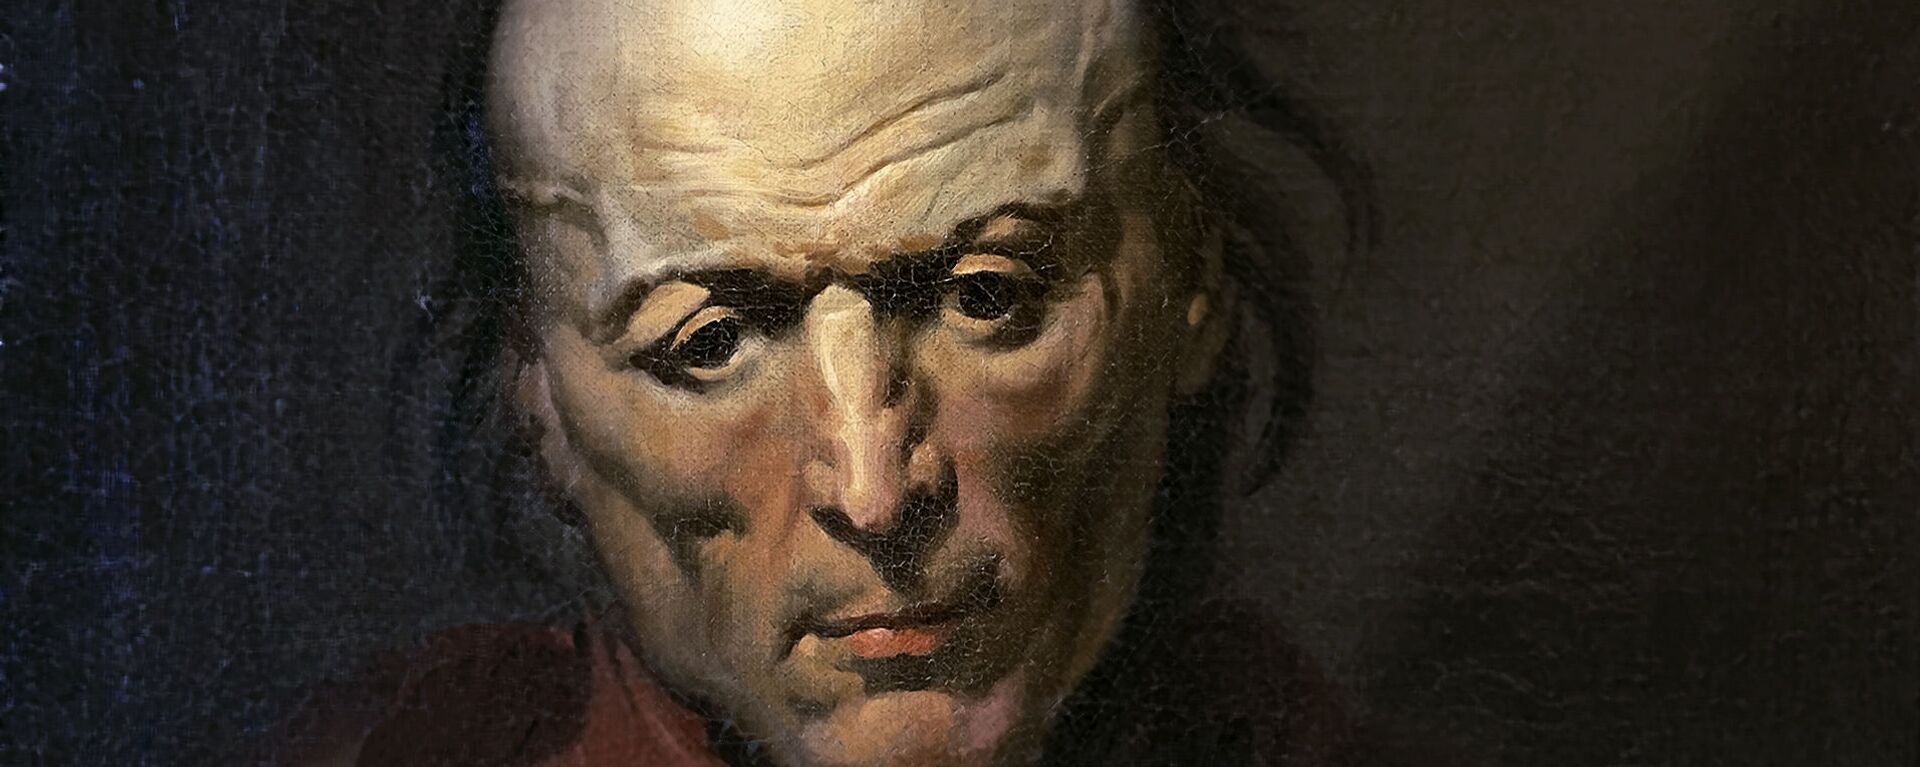 El cuadro de Géricault 'El hombre melancólico' ha sido encontrado por un español dos siglos después de que se pintara - Sputnik Mundo, 1920, 27.01.2021